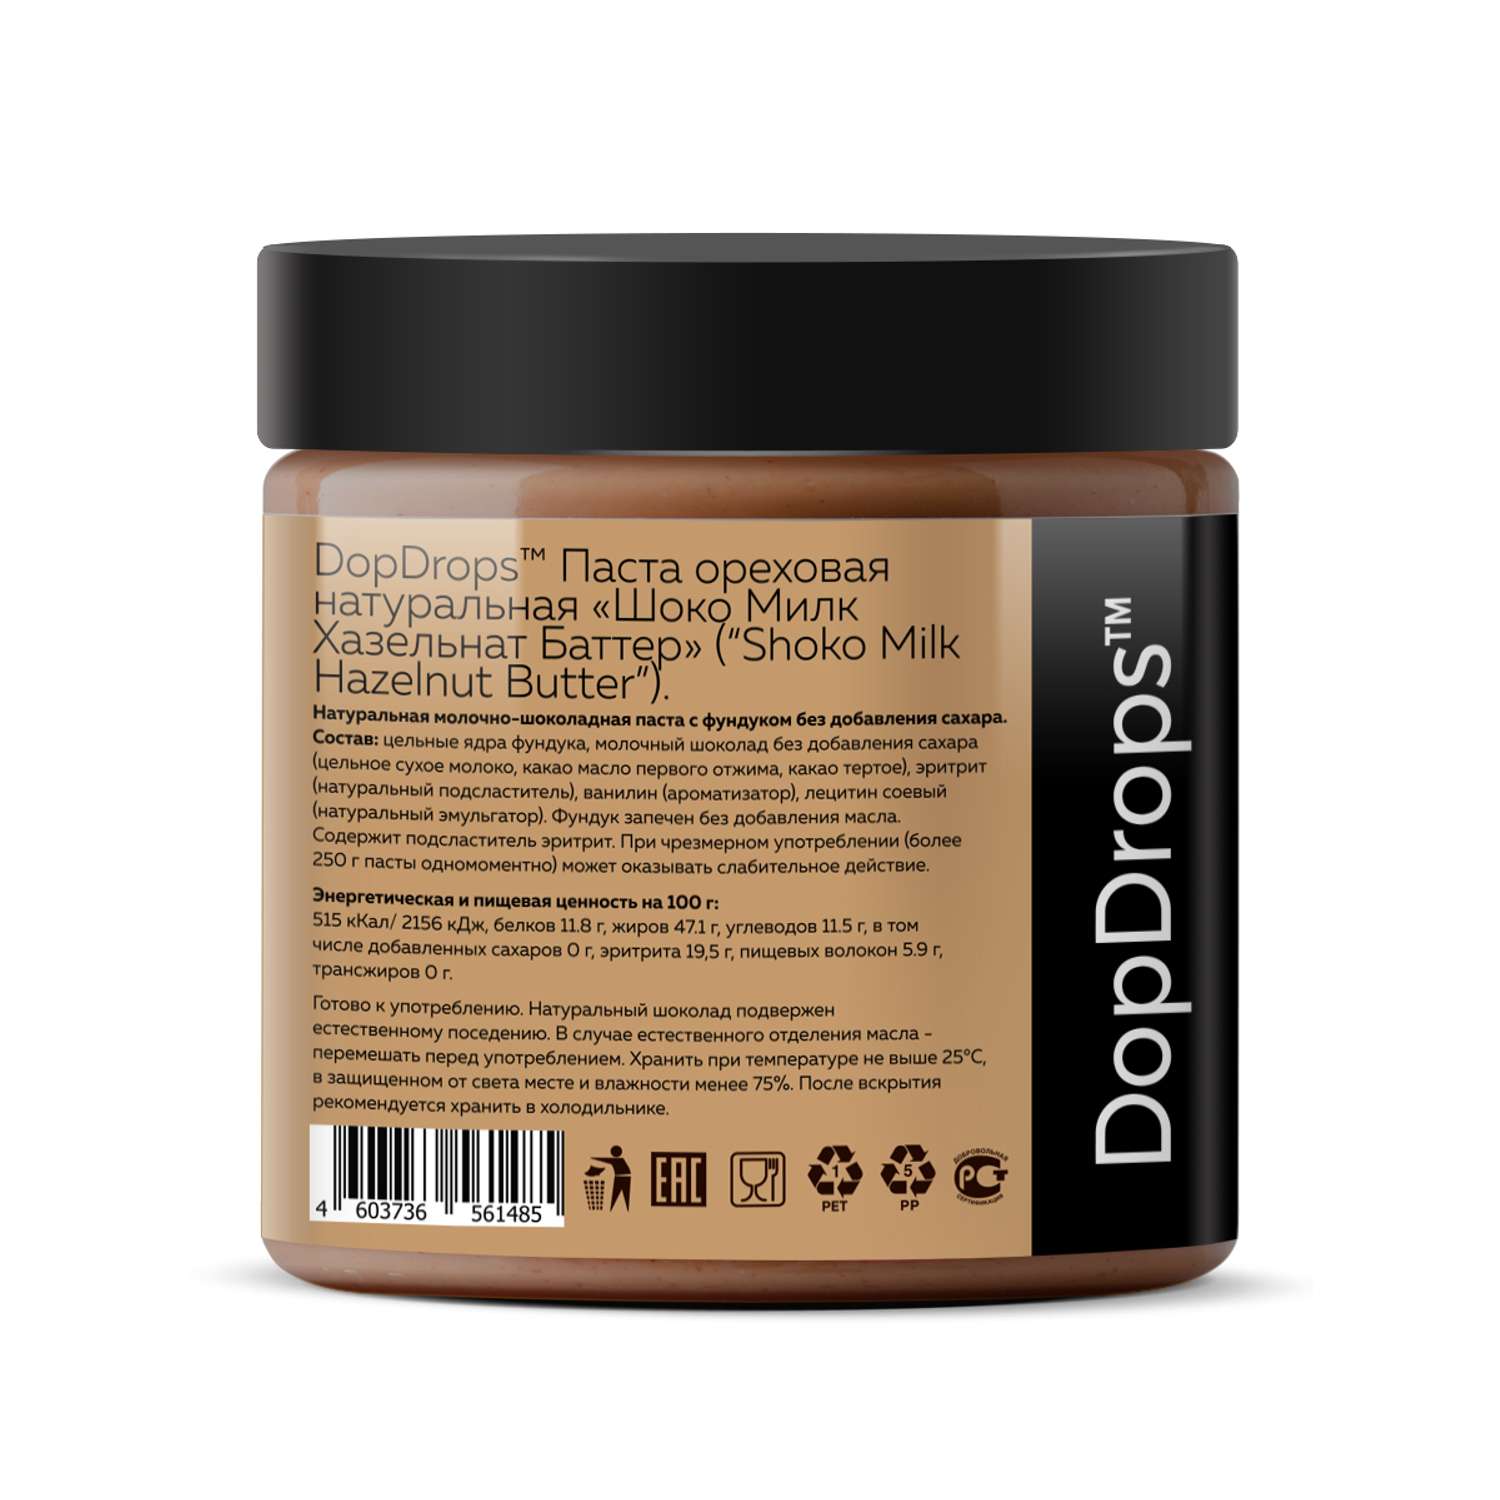 Шоколадная ореховая паста DopDrops фундучная с молочным шоколадом 500 г - фото 2